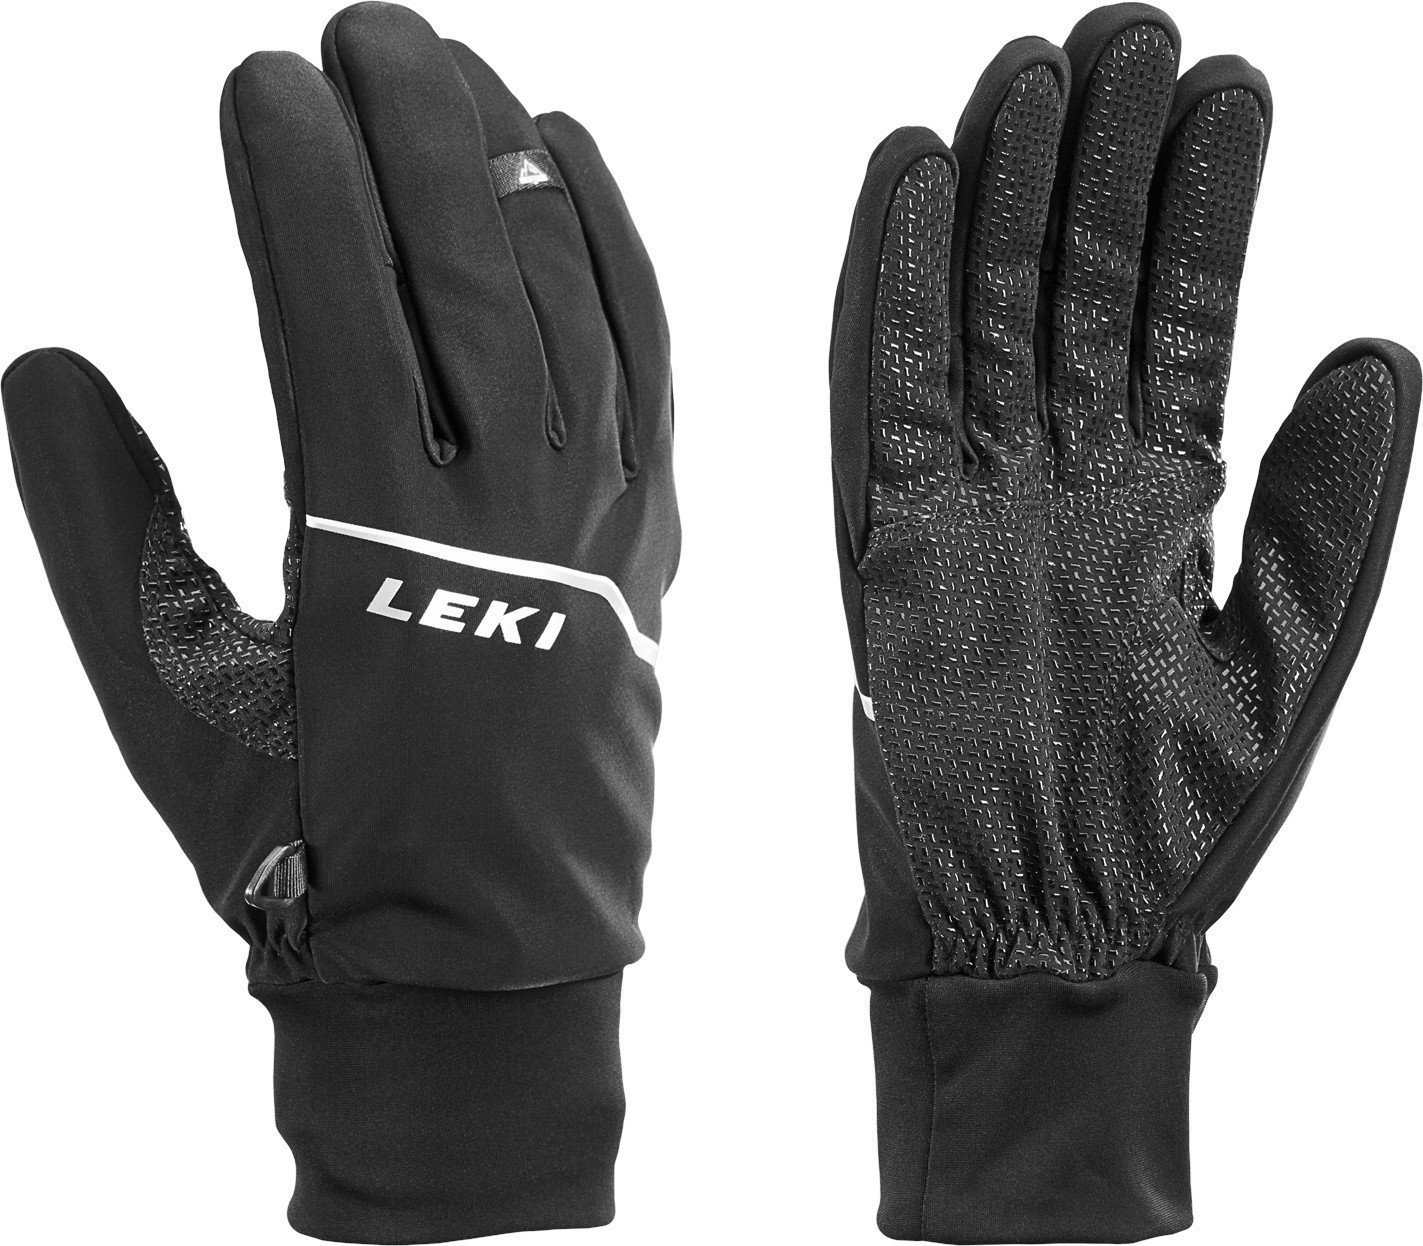 Pъкавици Leki Tour Lite Black/Chrome/White 8 Pъкавици